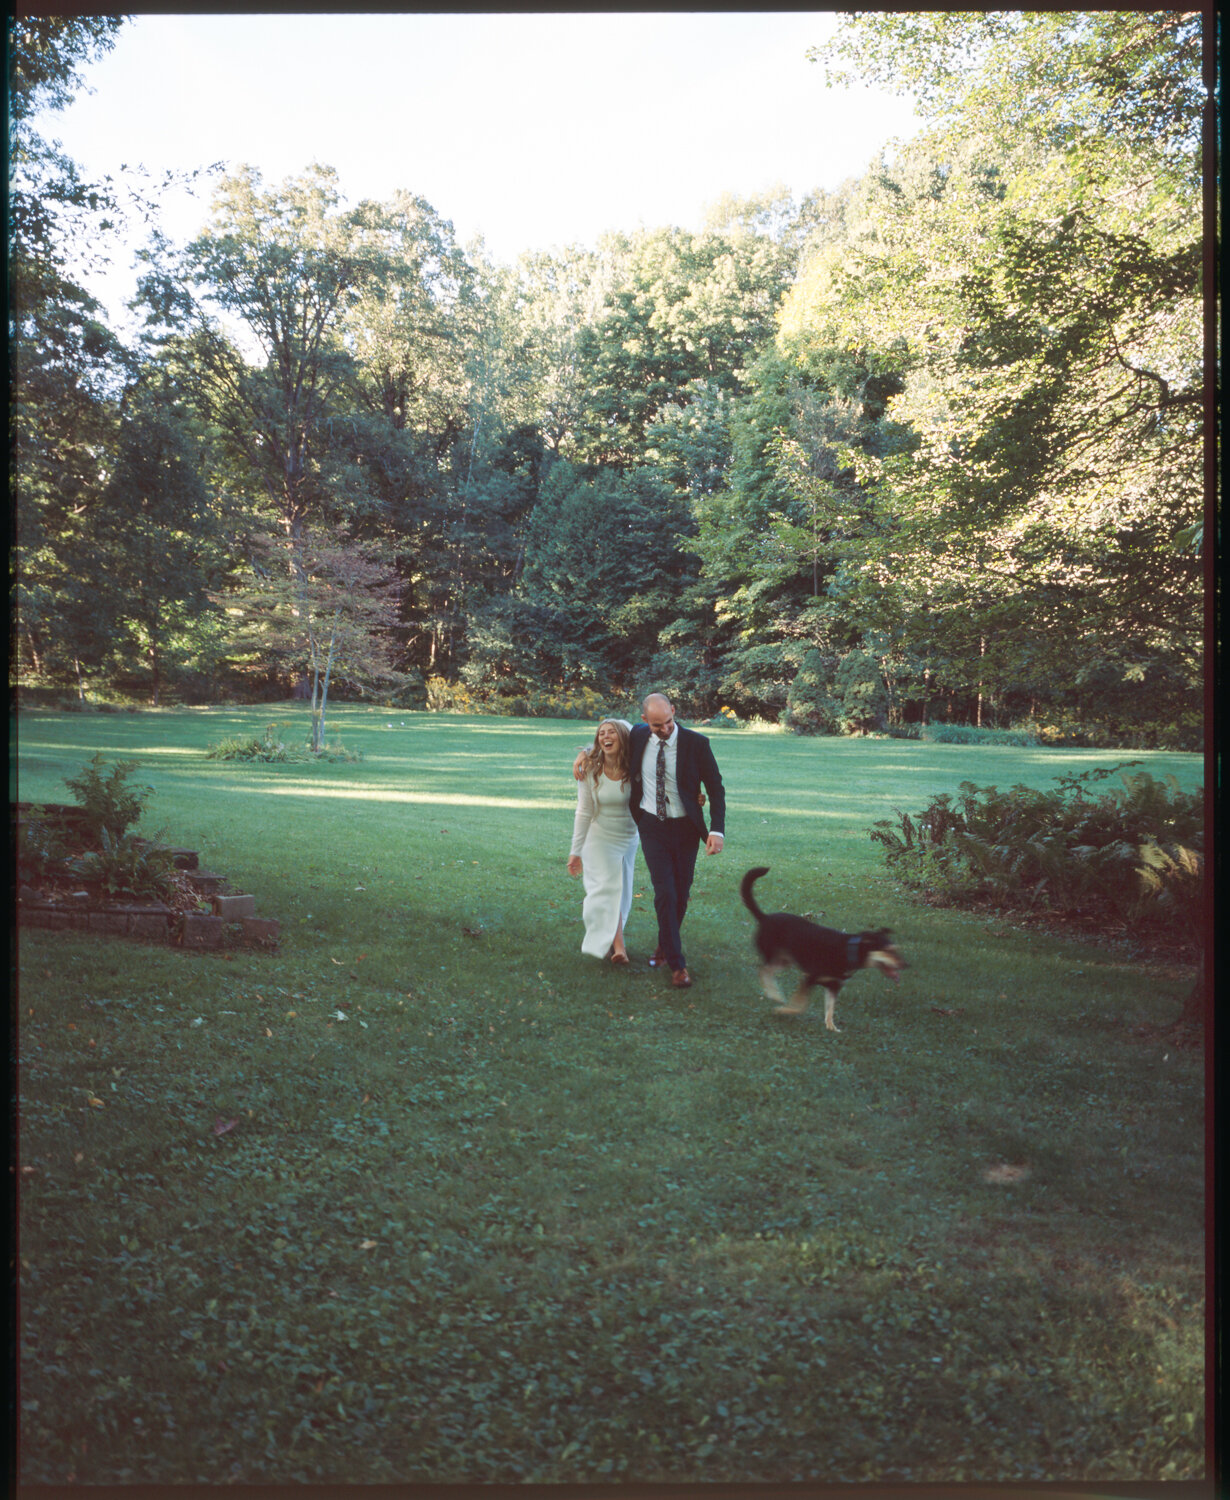 Analog-Film-Micro-Wedding-Photos-Inspiration-Backyard-Toronto-Ontario-82.JPG